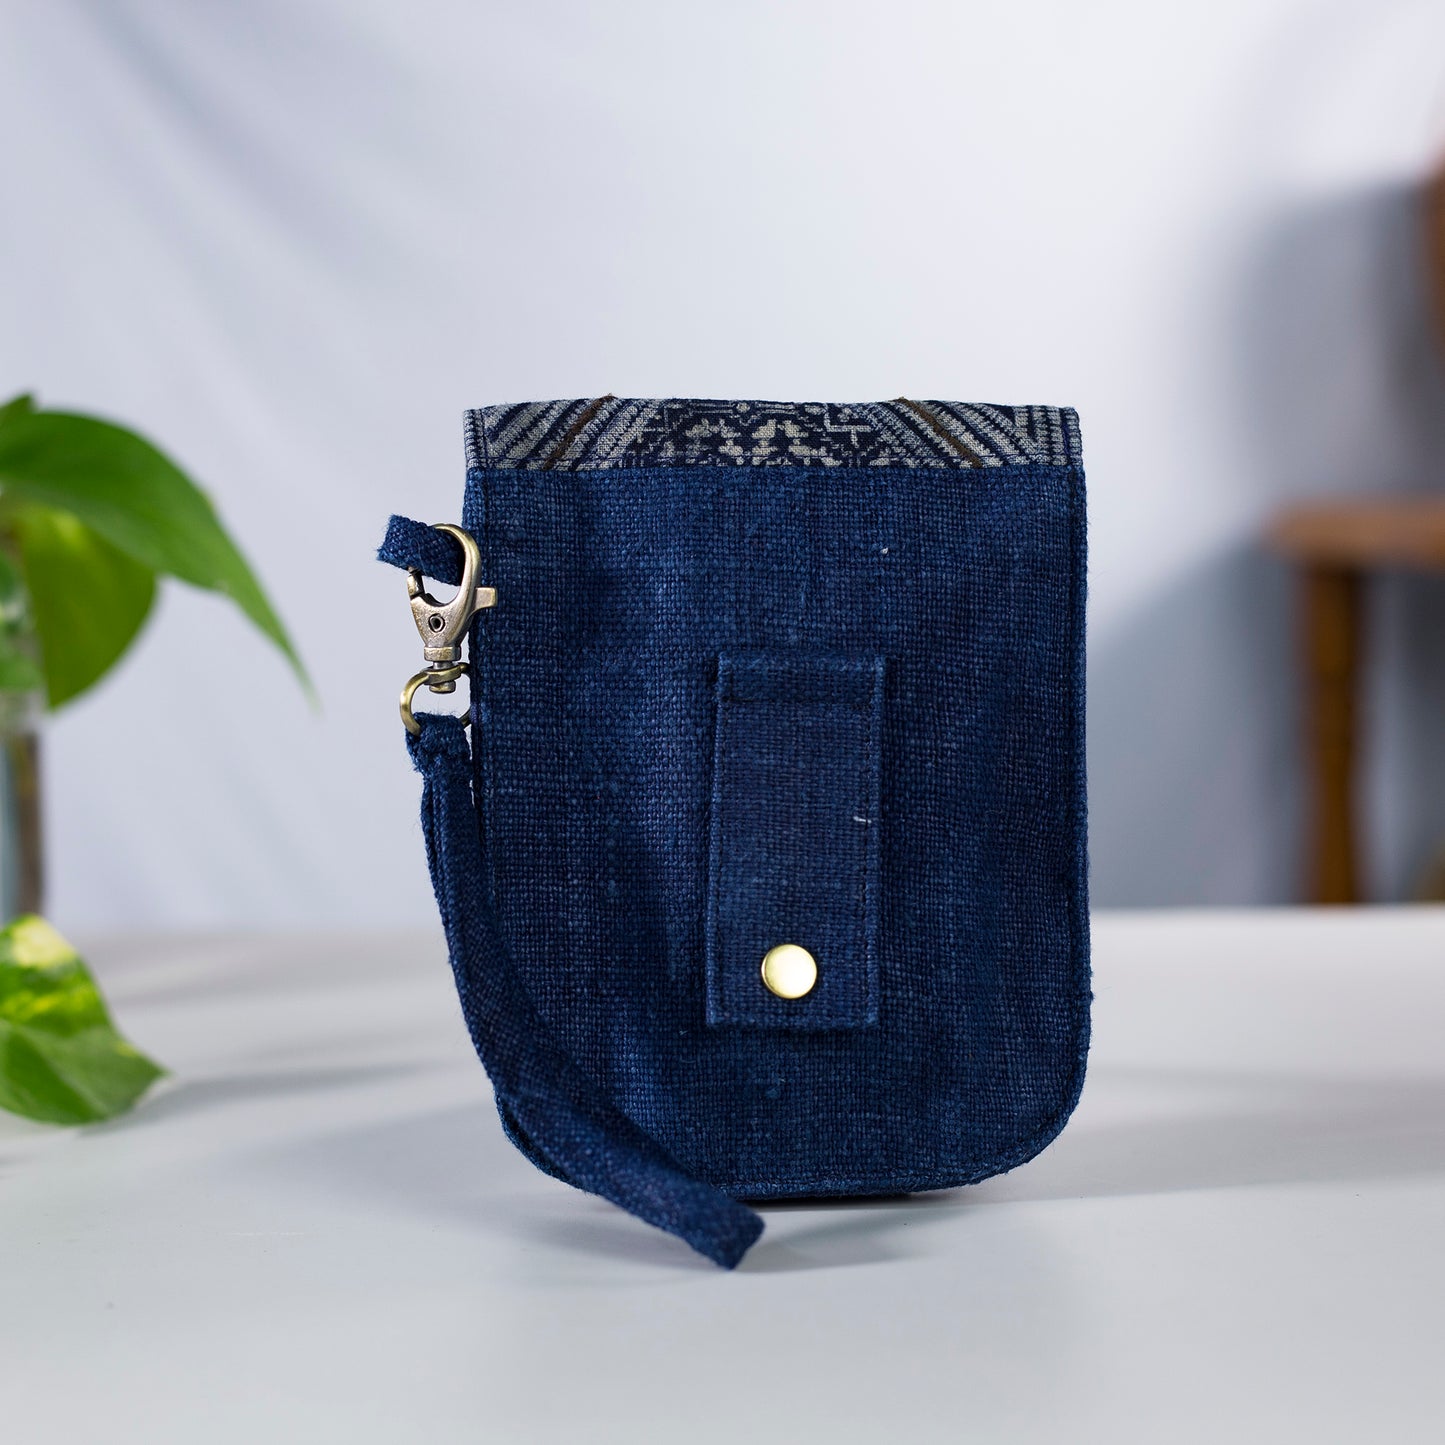 Flip phone belt bag, wrist bag option, natural hemp in INDIGO BLUE color